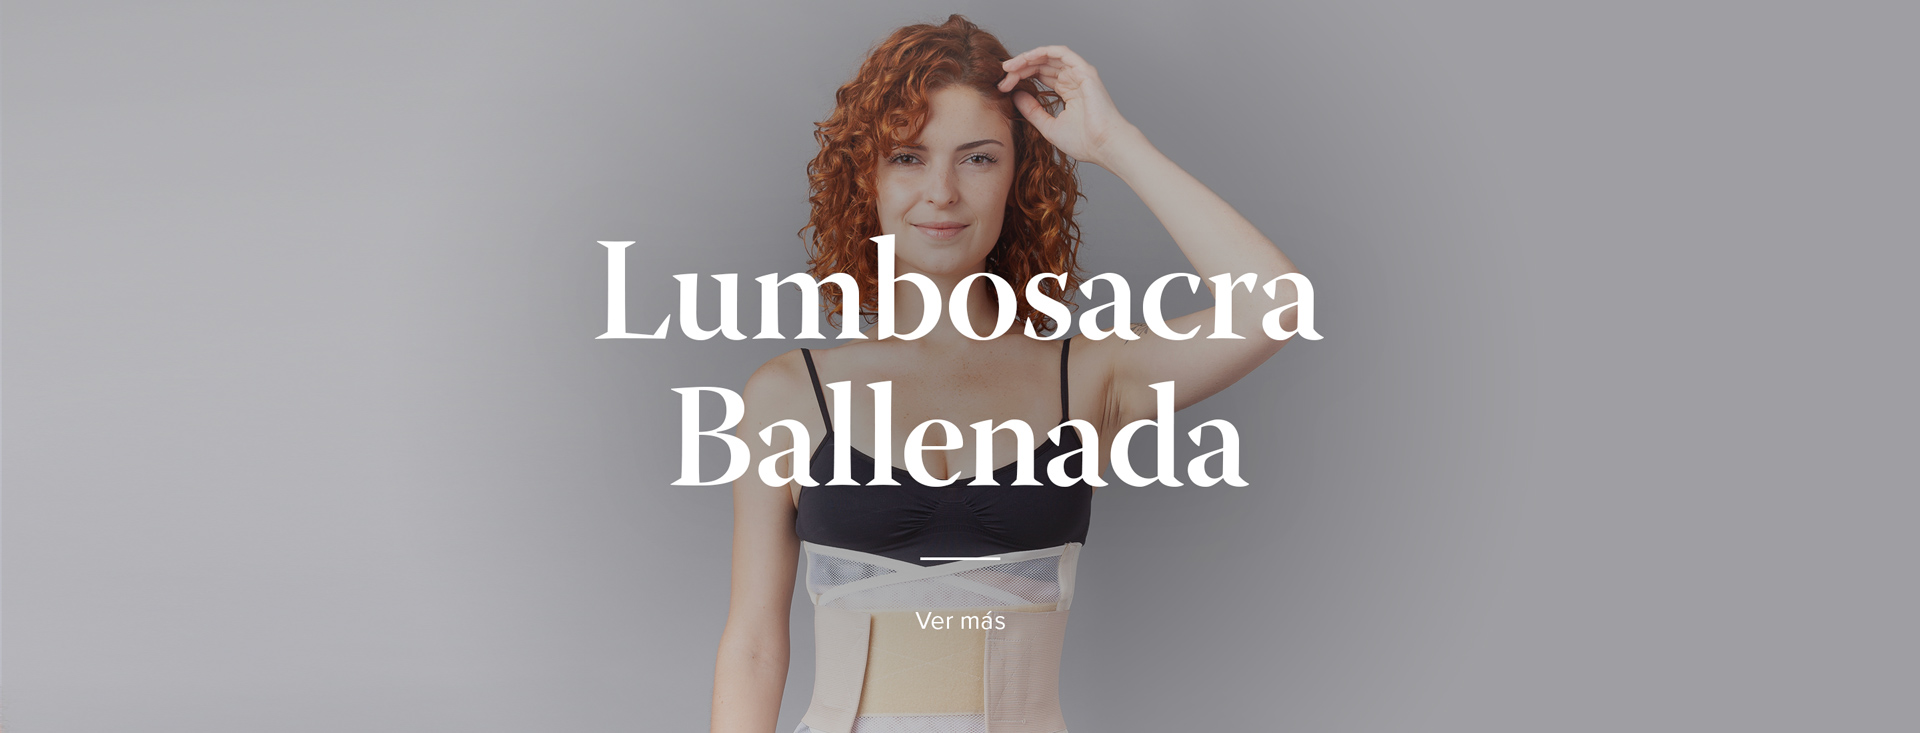 Lumbosacra Ballenada